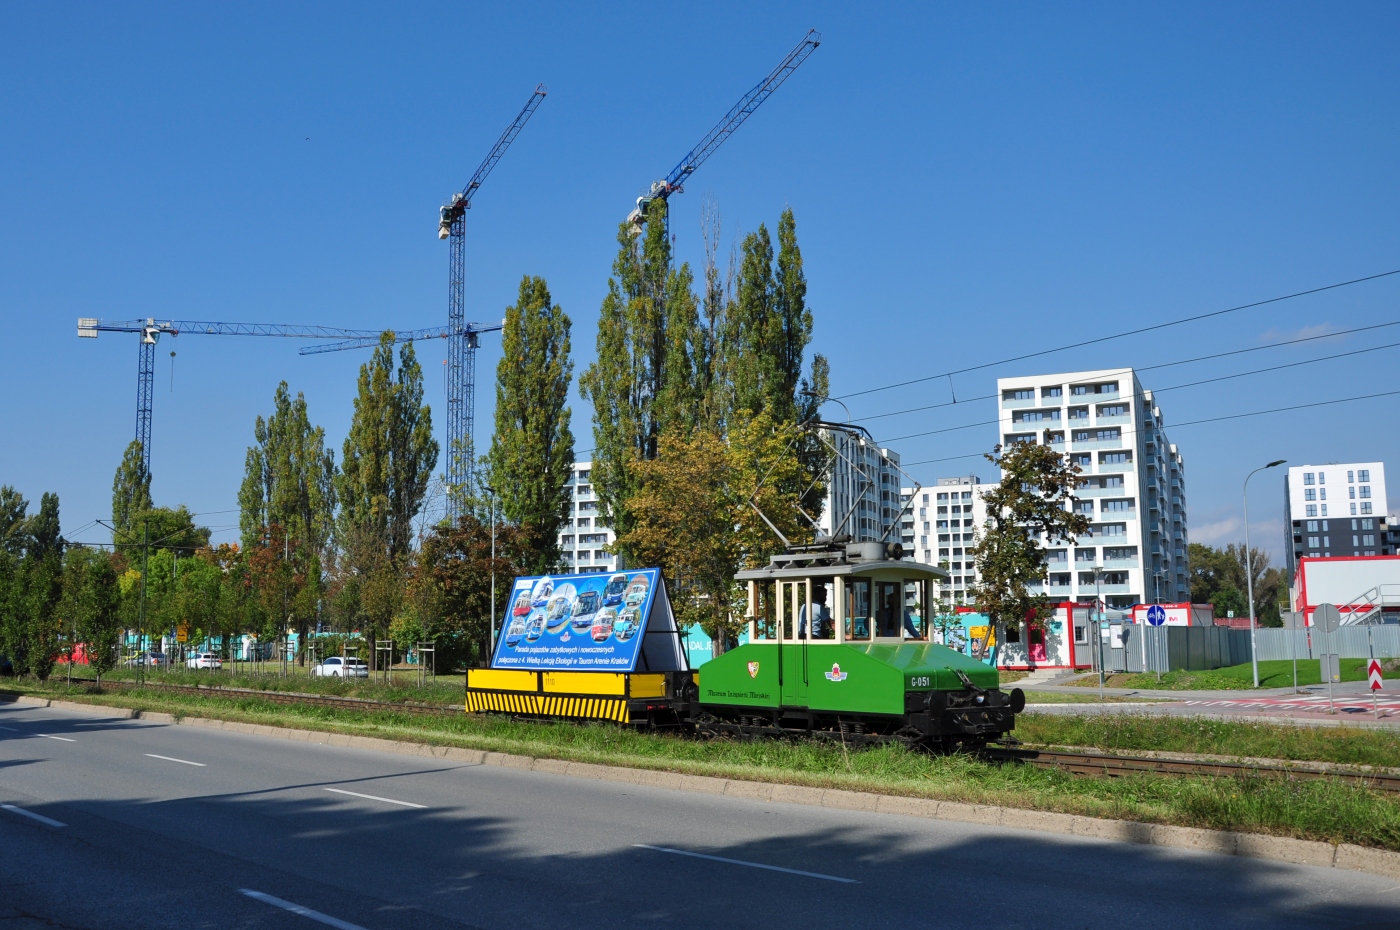 Freight tram #G-051